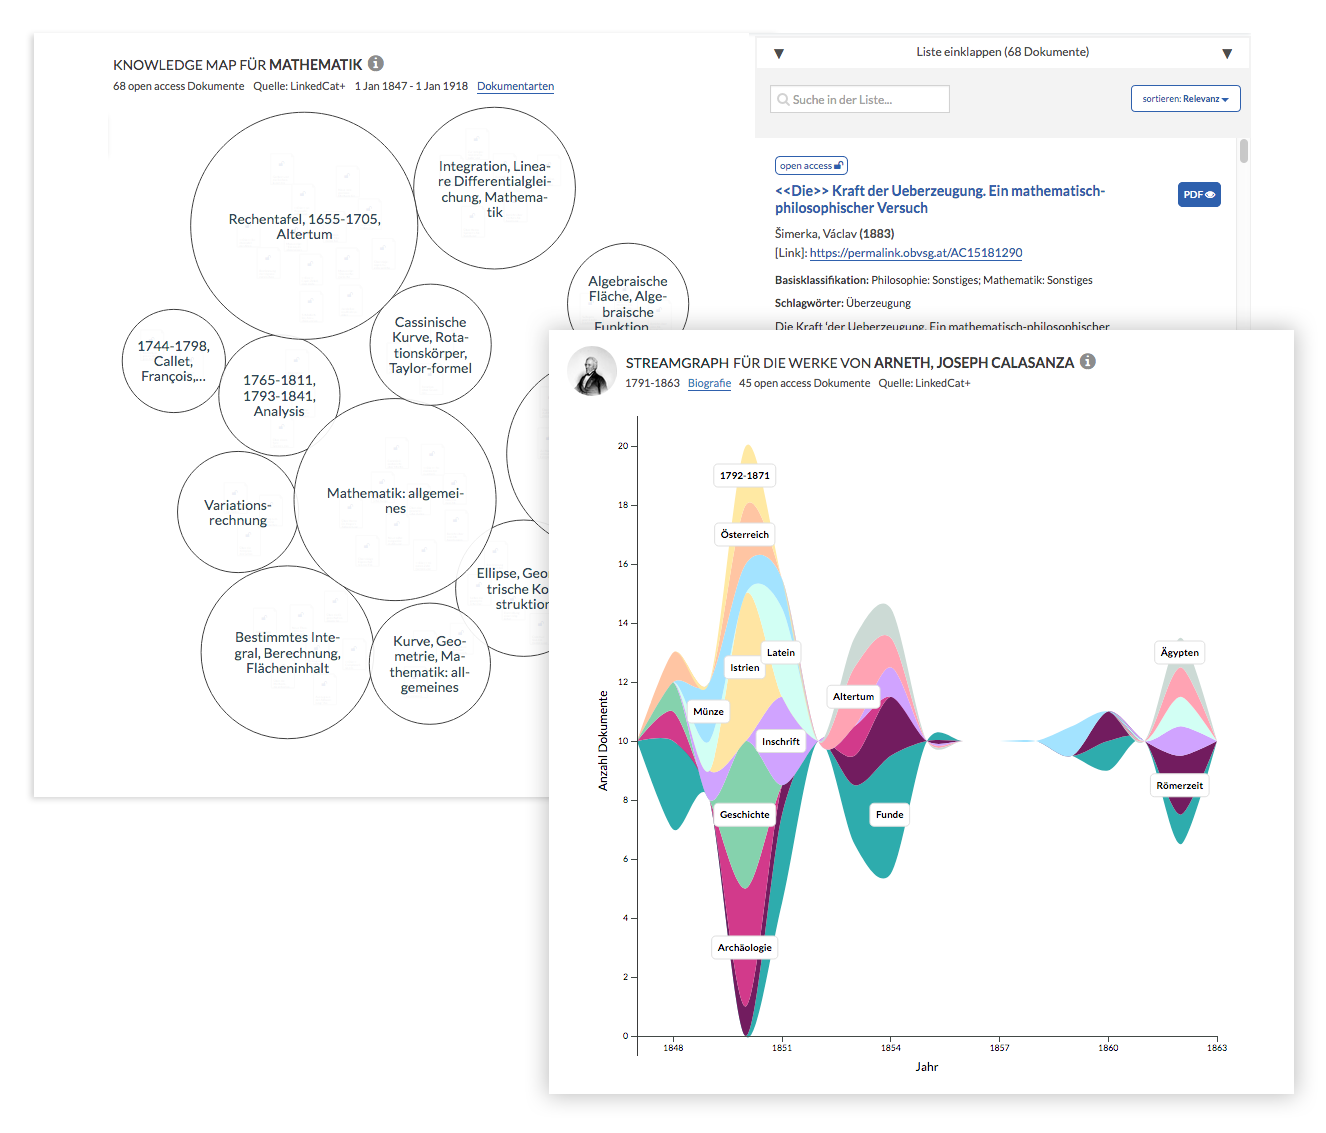 Visualisierungen: Knowledge Map und Streamgraph